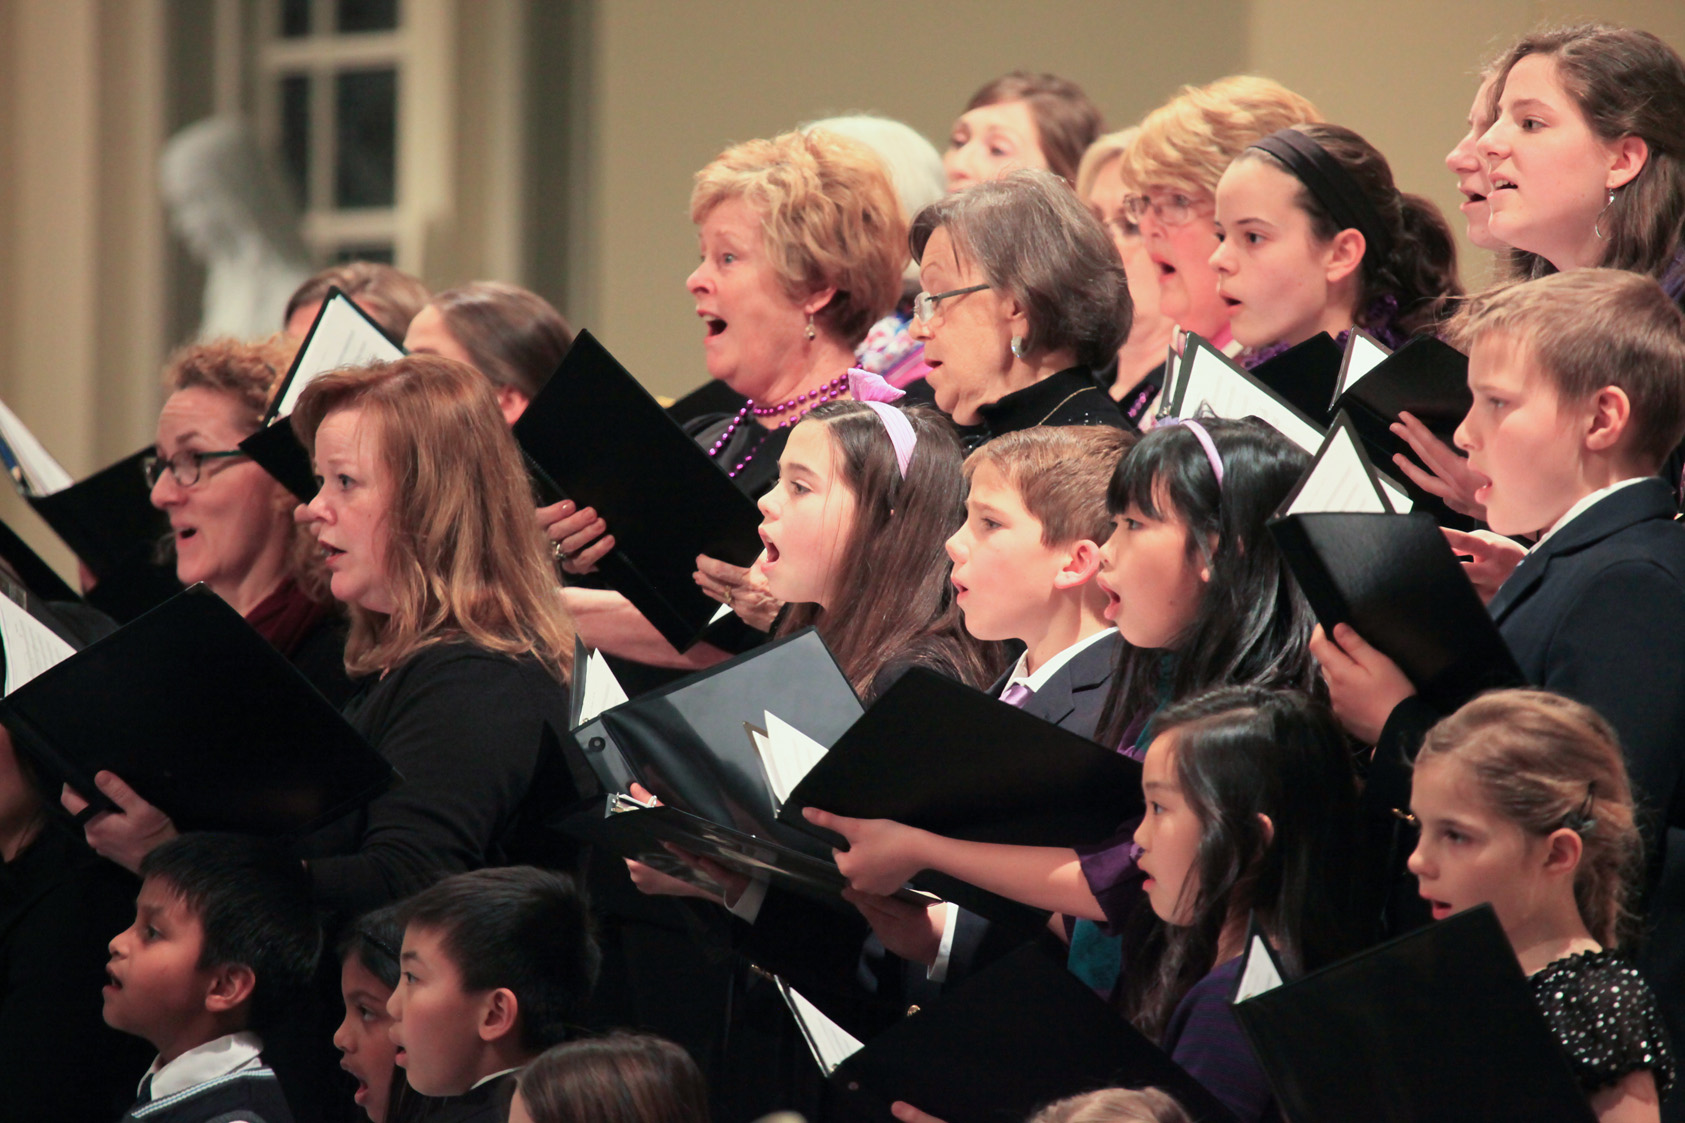 St. Louis Choir and Treble Choir